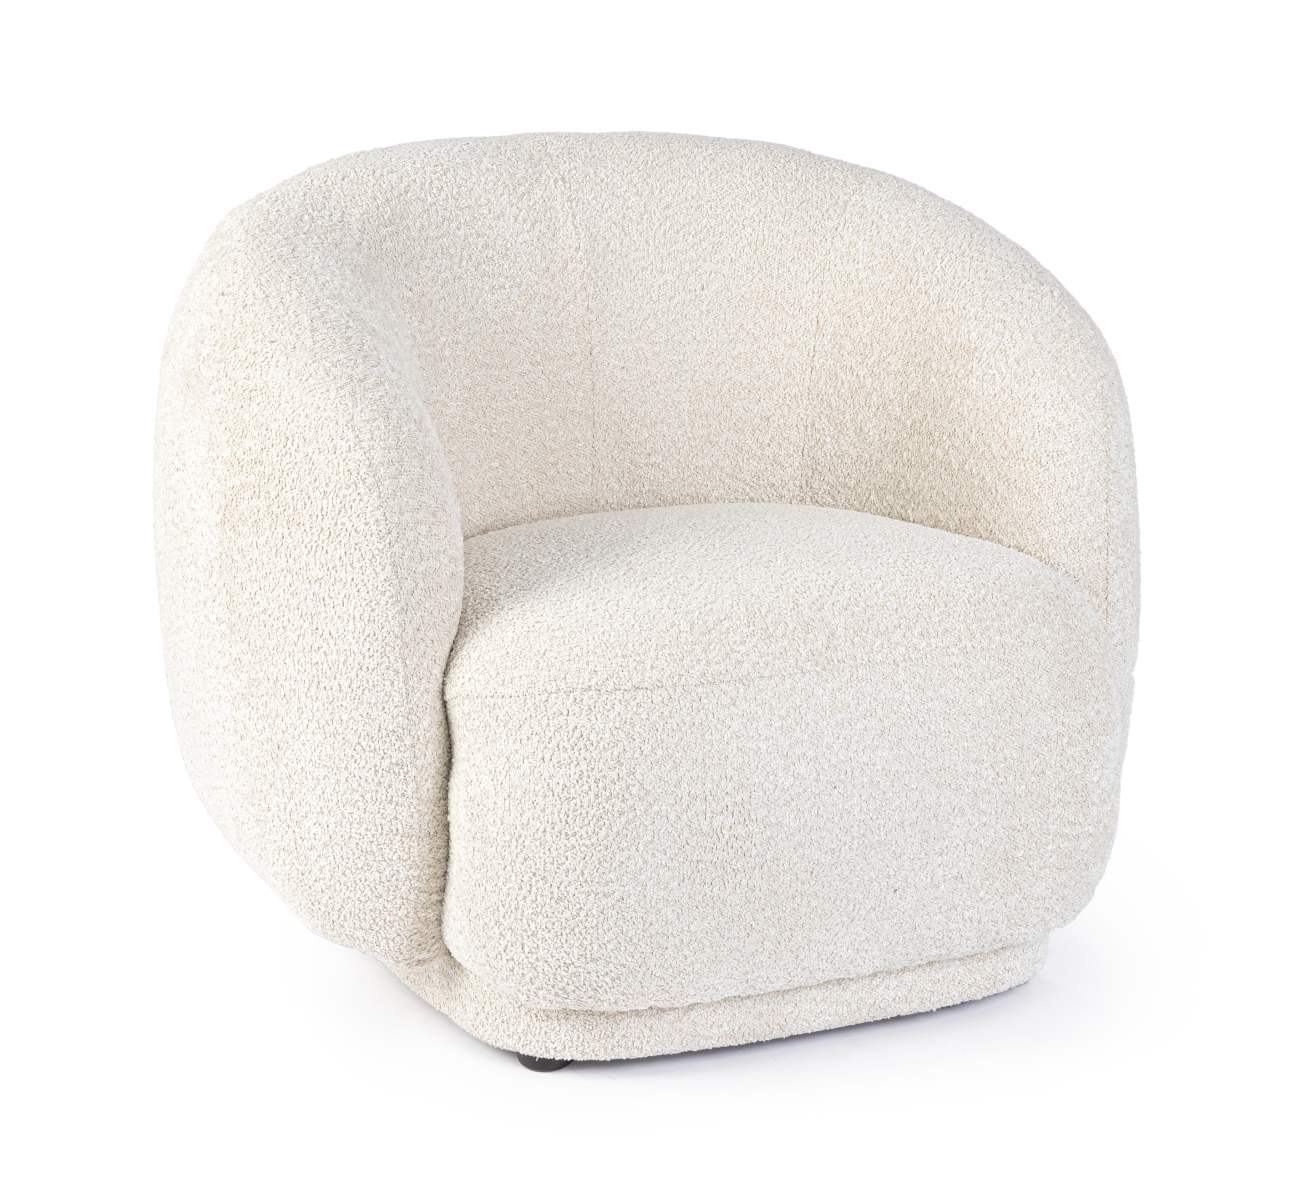 Der Sessel Tecla überzeugt mit seinem modernen Stil. Gefertigt wurde er aus Boucle-Stoff, welcher einen natürlichen Farbton besitzt. Der Sessel besitzt eine Sitzhöhe von 43 cm.